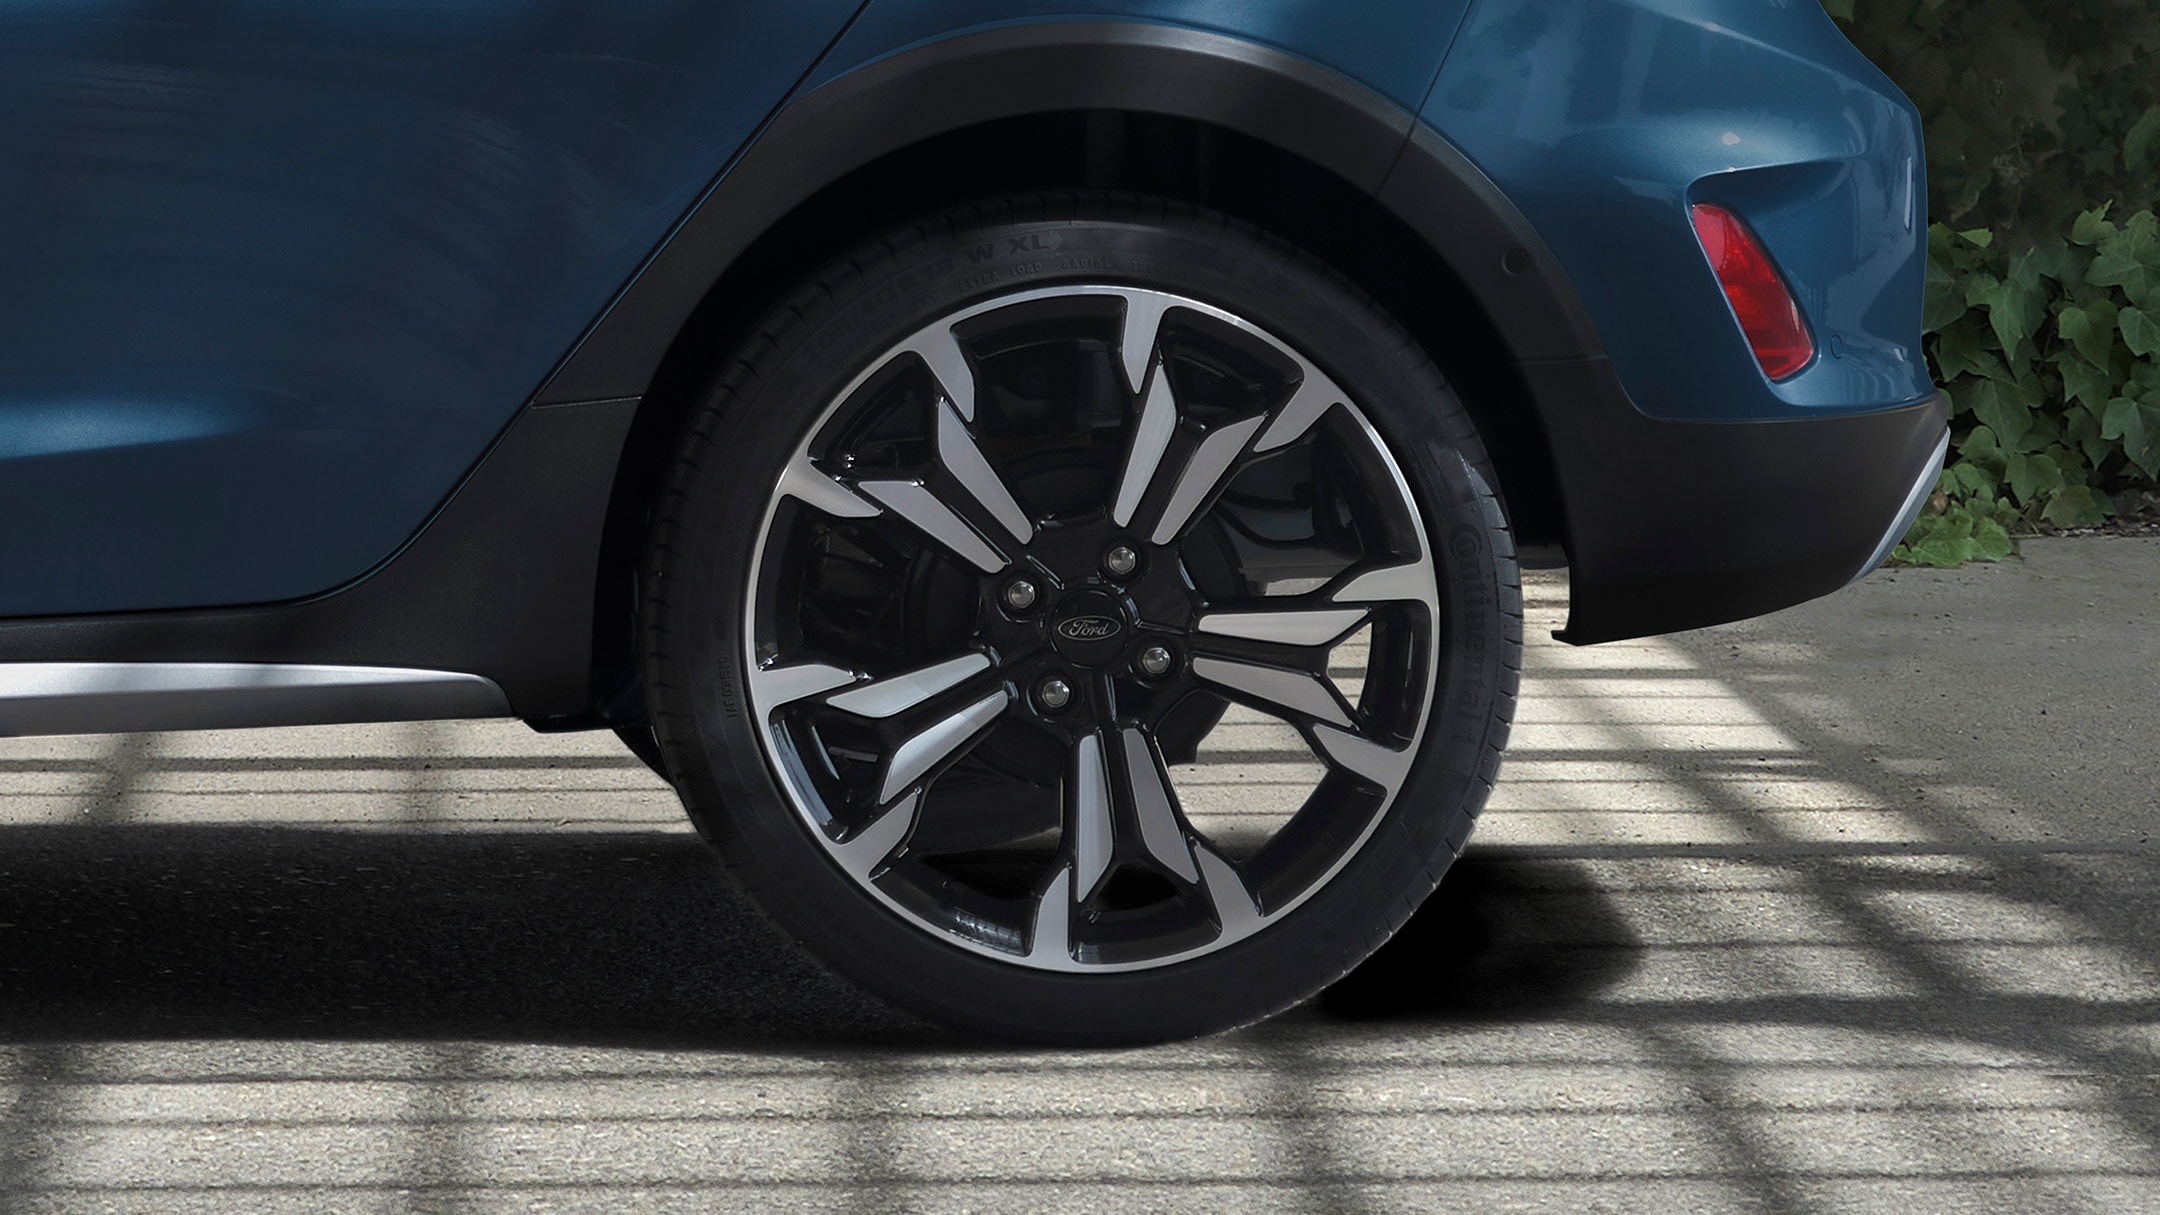 Ford Fiesta couleur bleue. Vue détaillée d’une roue arrière.